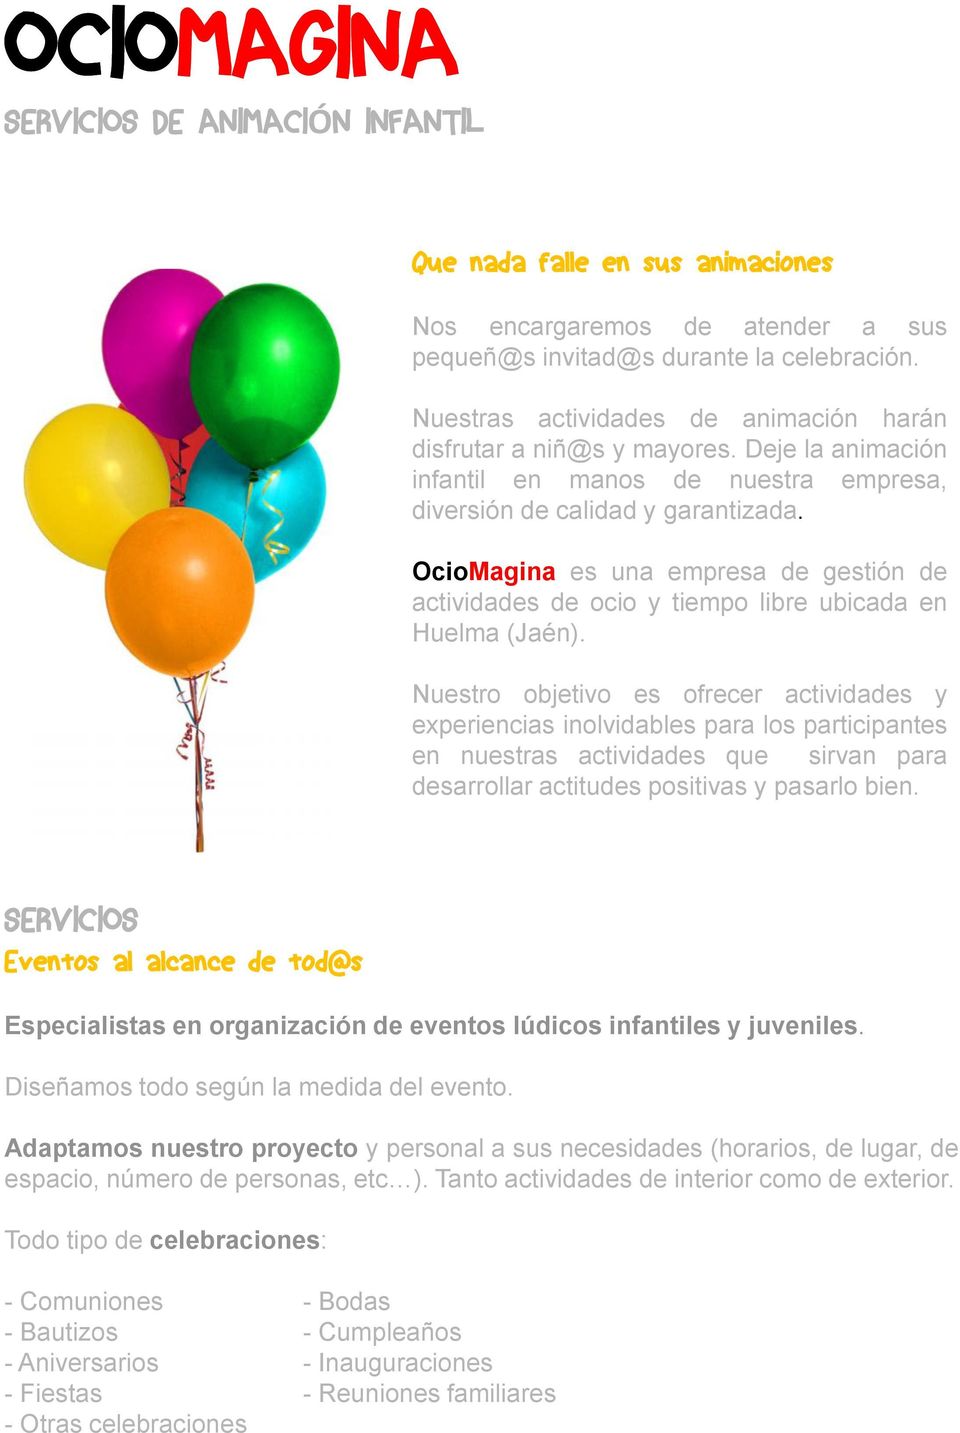 OcioMagina es una empresa de gestión de actividades de ocio y tiempo libre ubicada en Huelma (Jaén).